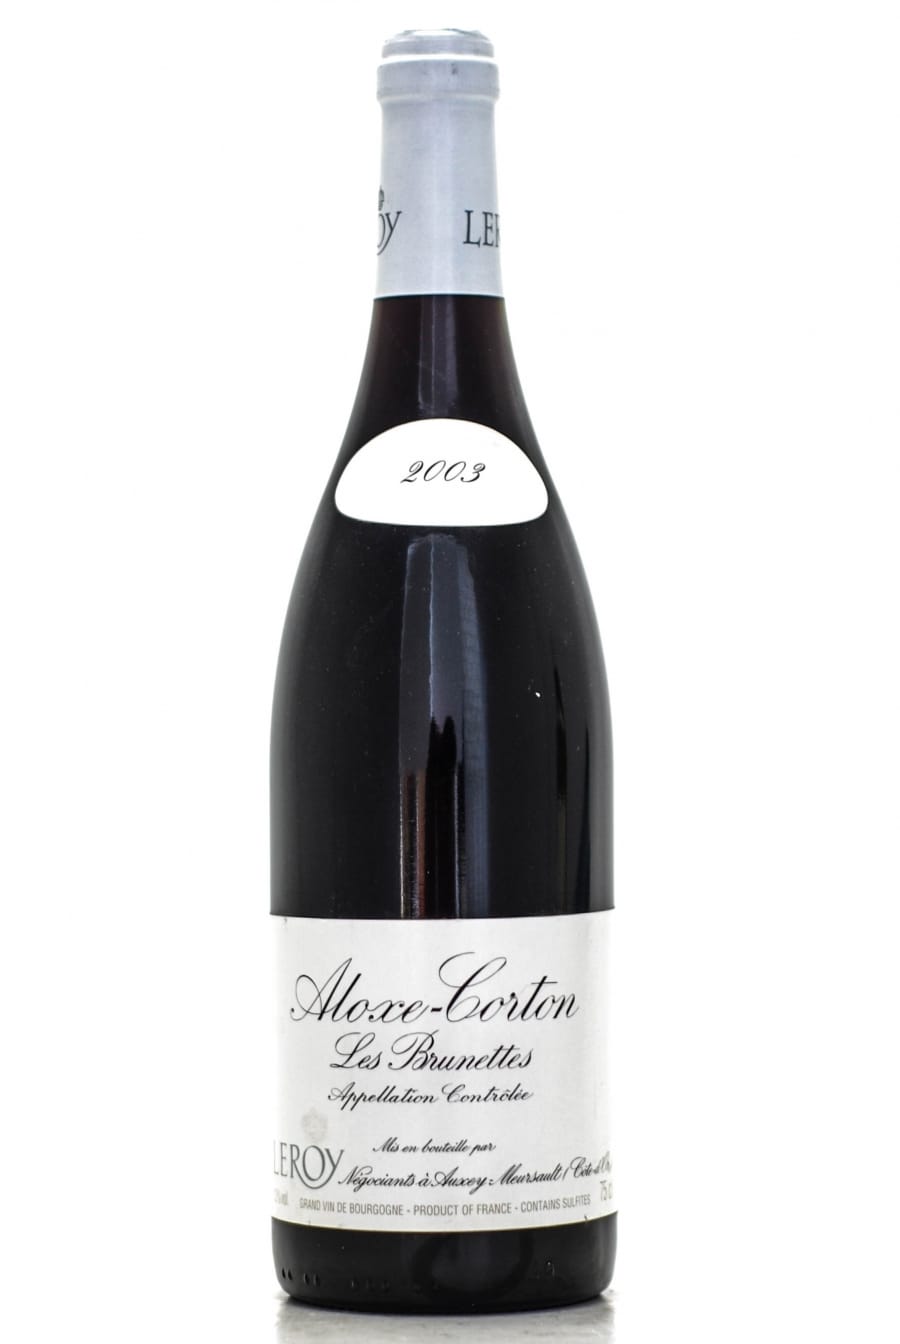 Aloxe Corton Les Brunettes 2003 - Maison Leroy | Buy Online | Best of Wines